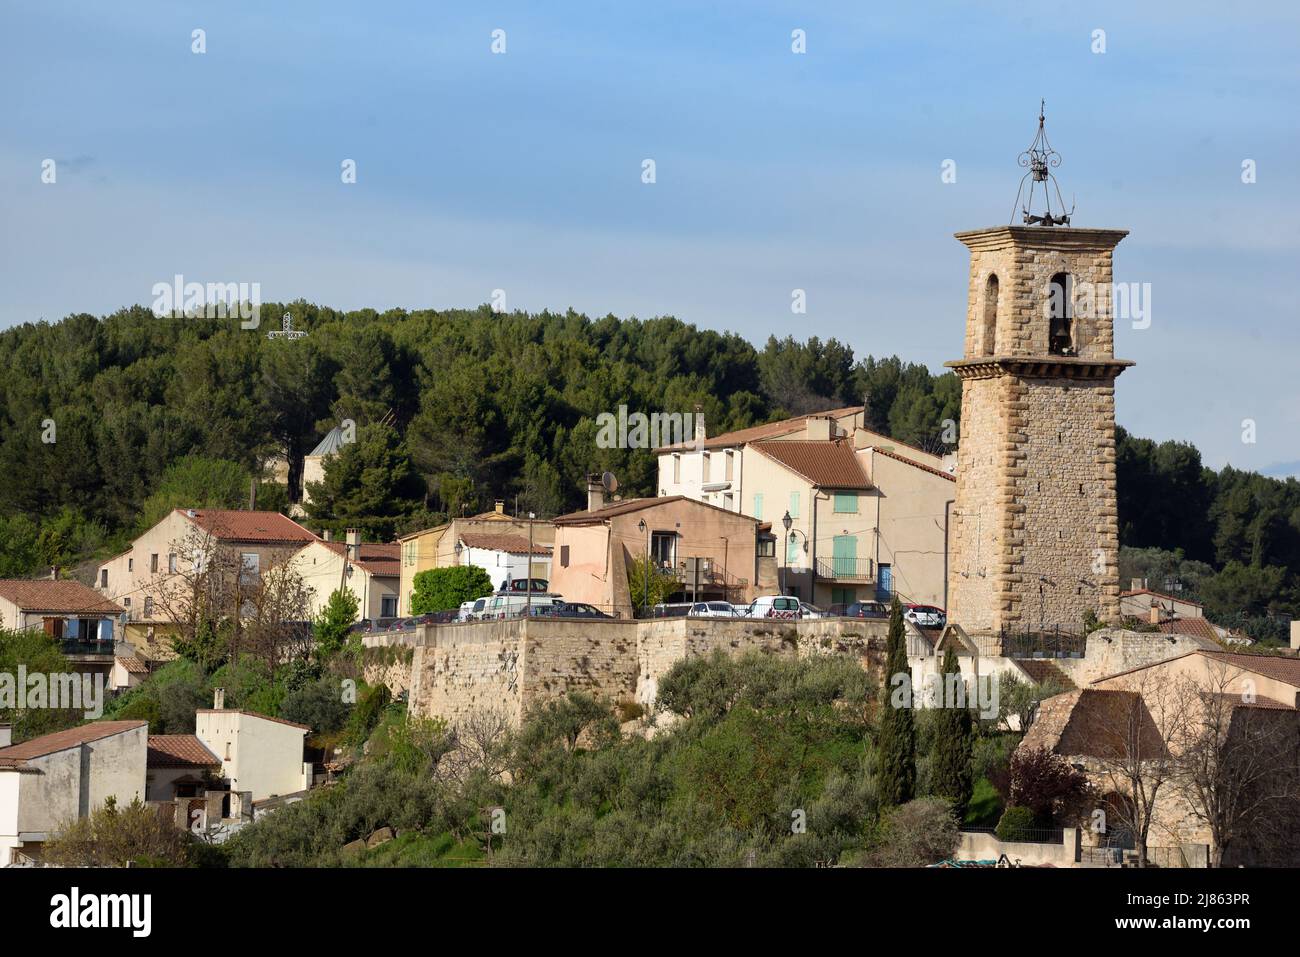 Vista sobre el casco antiguo o antiguo pueblo Hilltop con sus C18th Belfry Gardanne Bouches-du-Rhône Provenza Francia Foto de stock